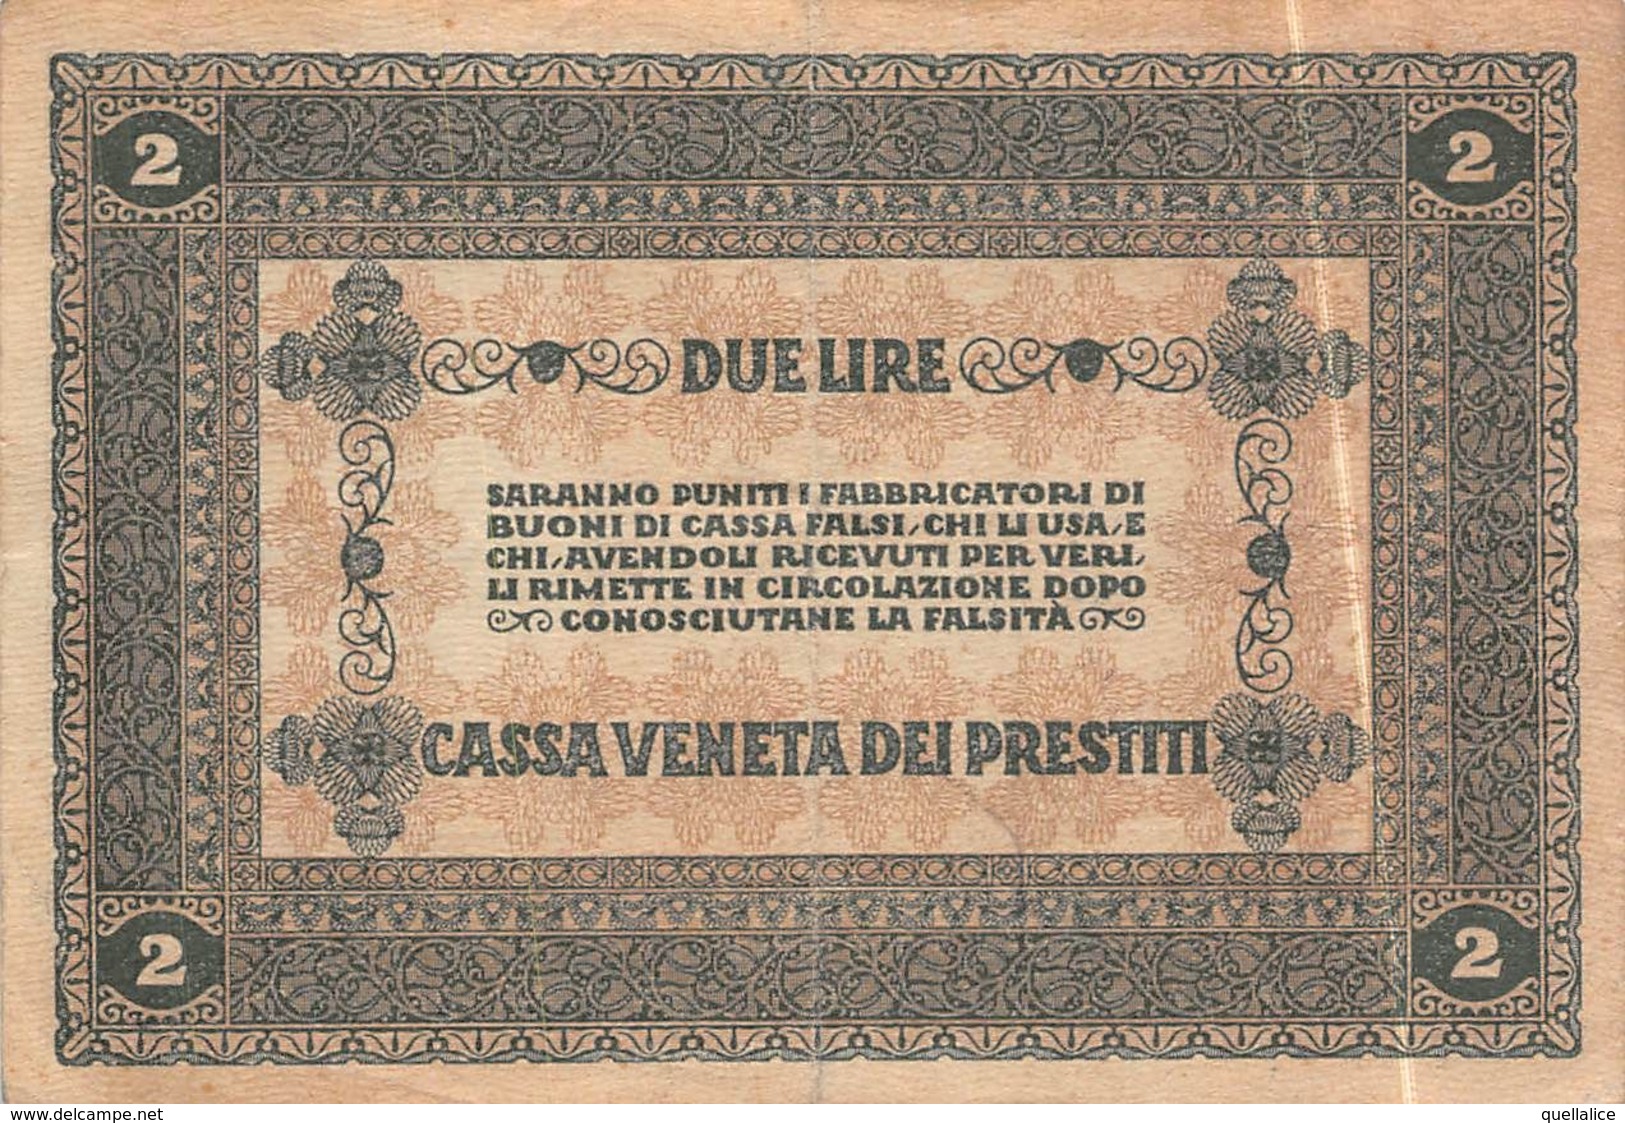 01616 "CASSA VENETA DEI PRESTITI - 2 GENNAIO 1918 - BUONO CASSA A CORSO LEGALE DA DUE LIRE" ORIGINALE - [10] Chèques